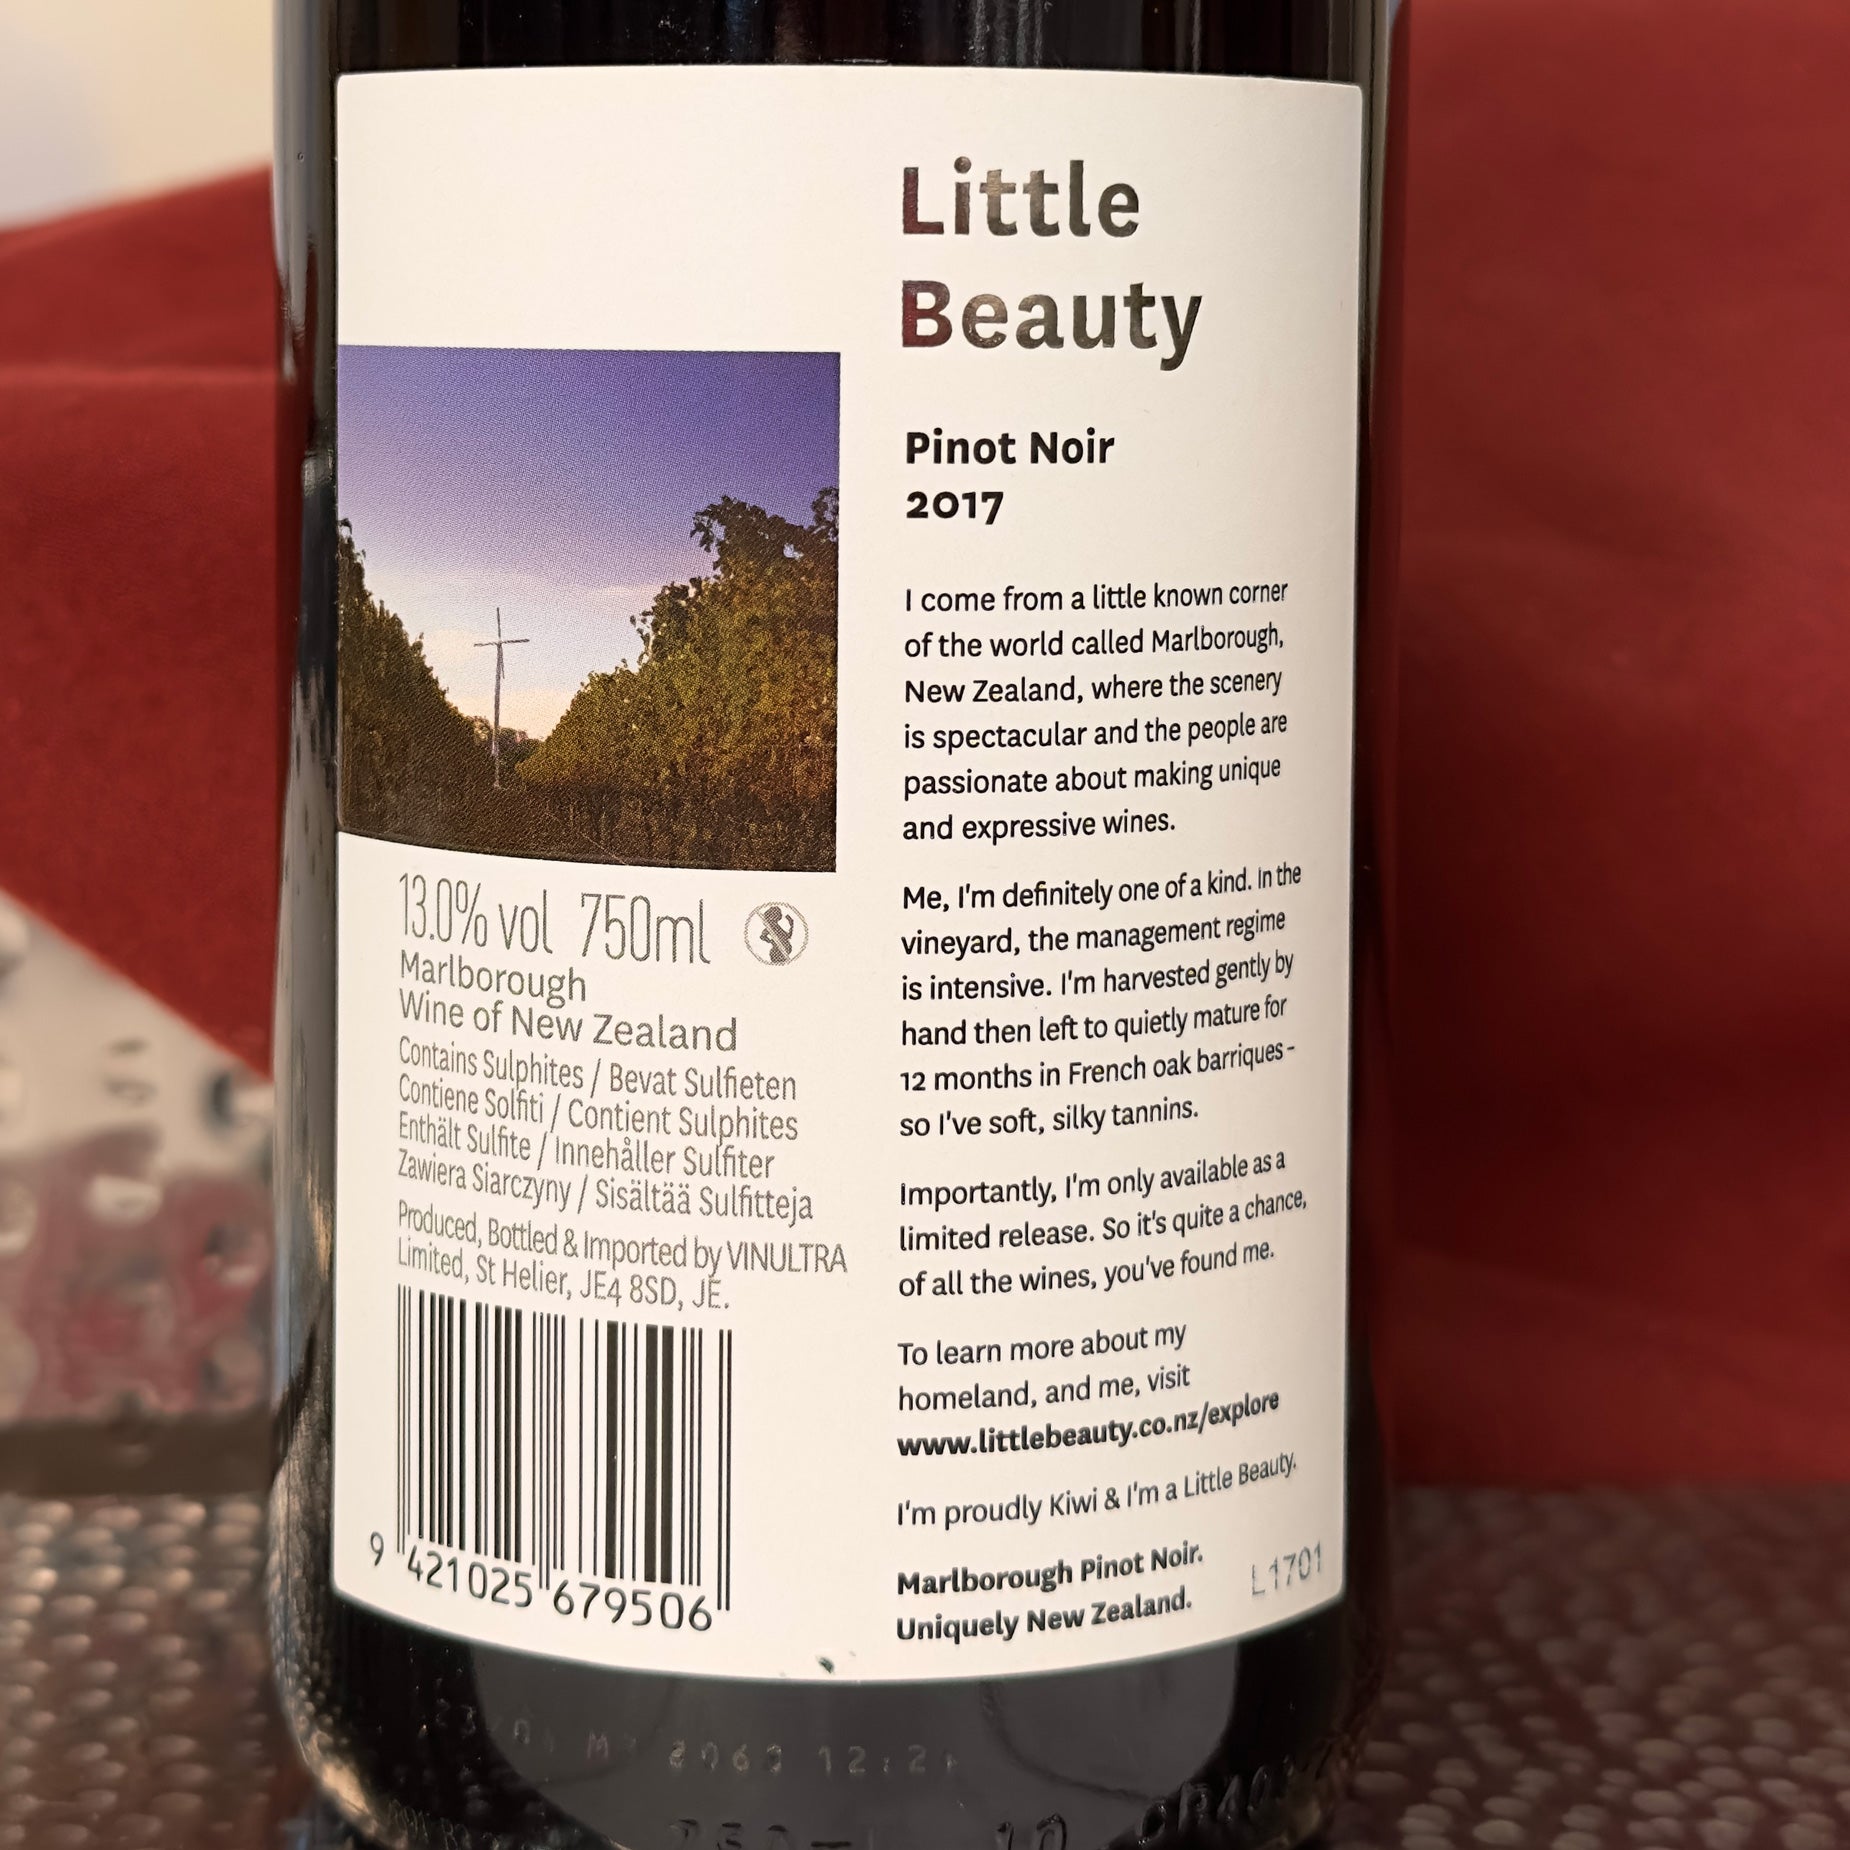 Little Beauty Limited Edition Pinot Noir, Marlborough, New Zealand 2017